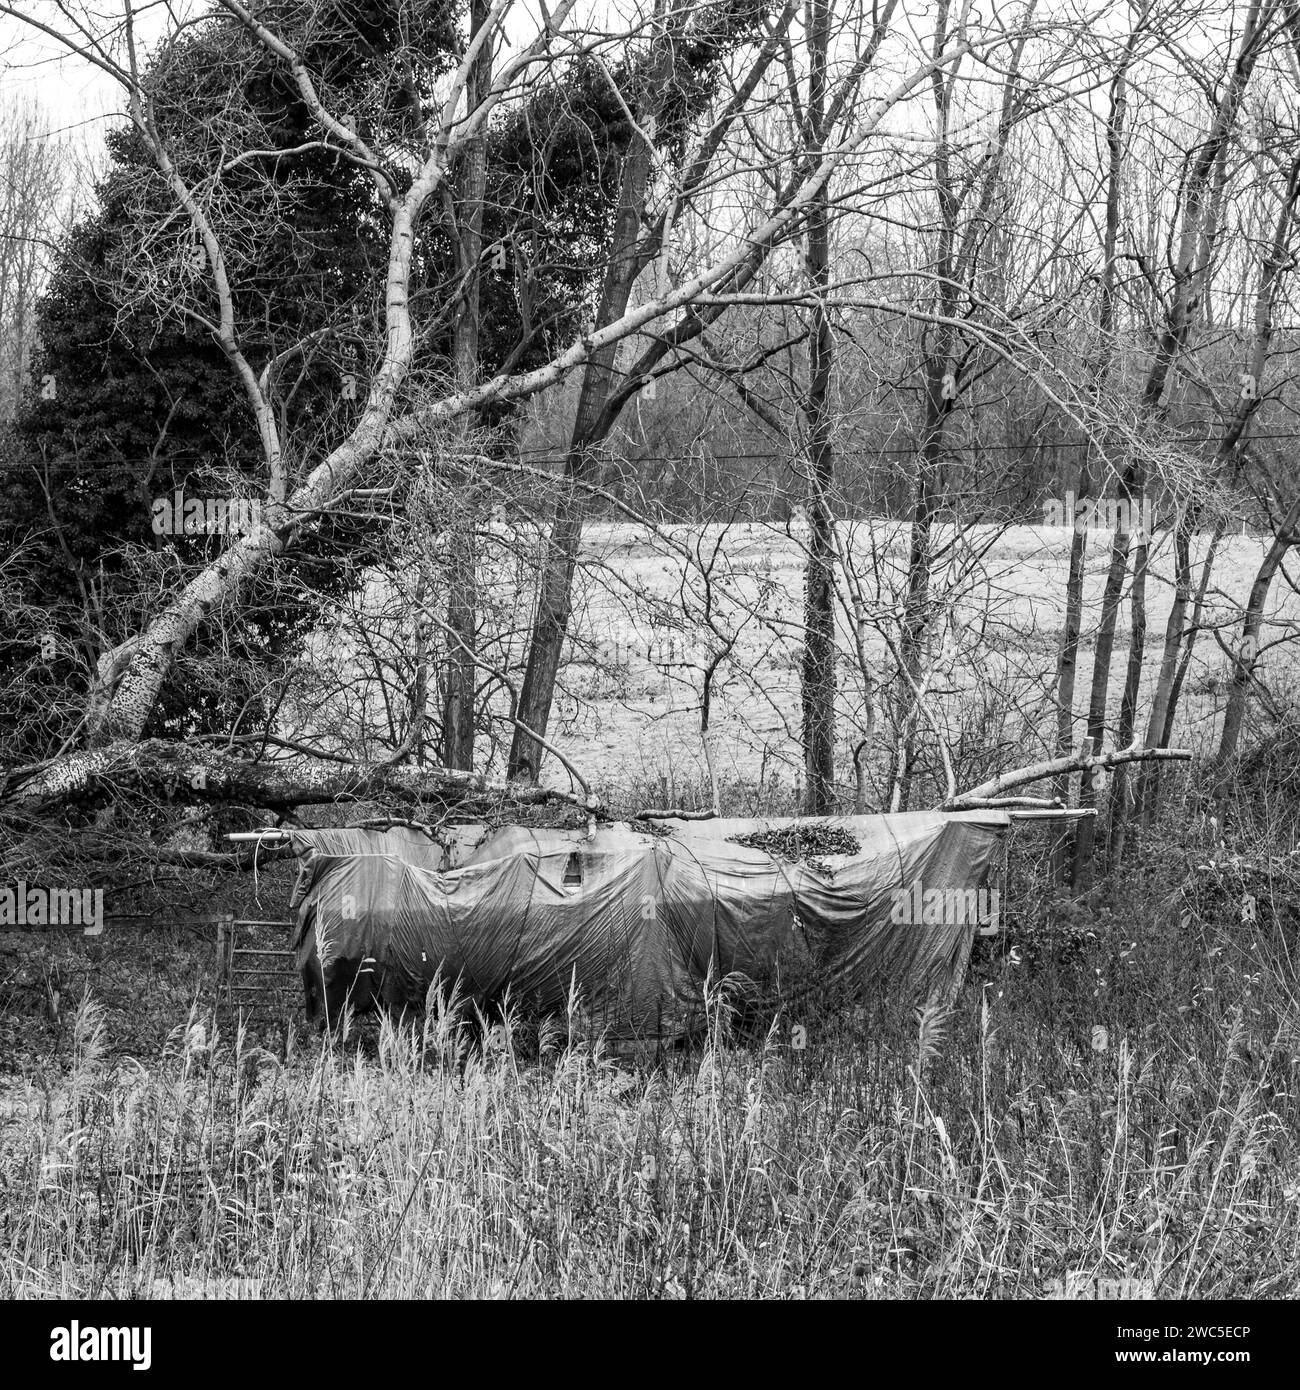 Image en noir et blanc d'un bateau entreposé endommagé par un arbre tombé dans des terres agricoles Banque D'Images